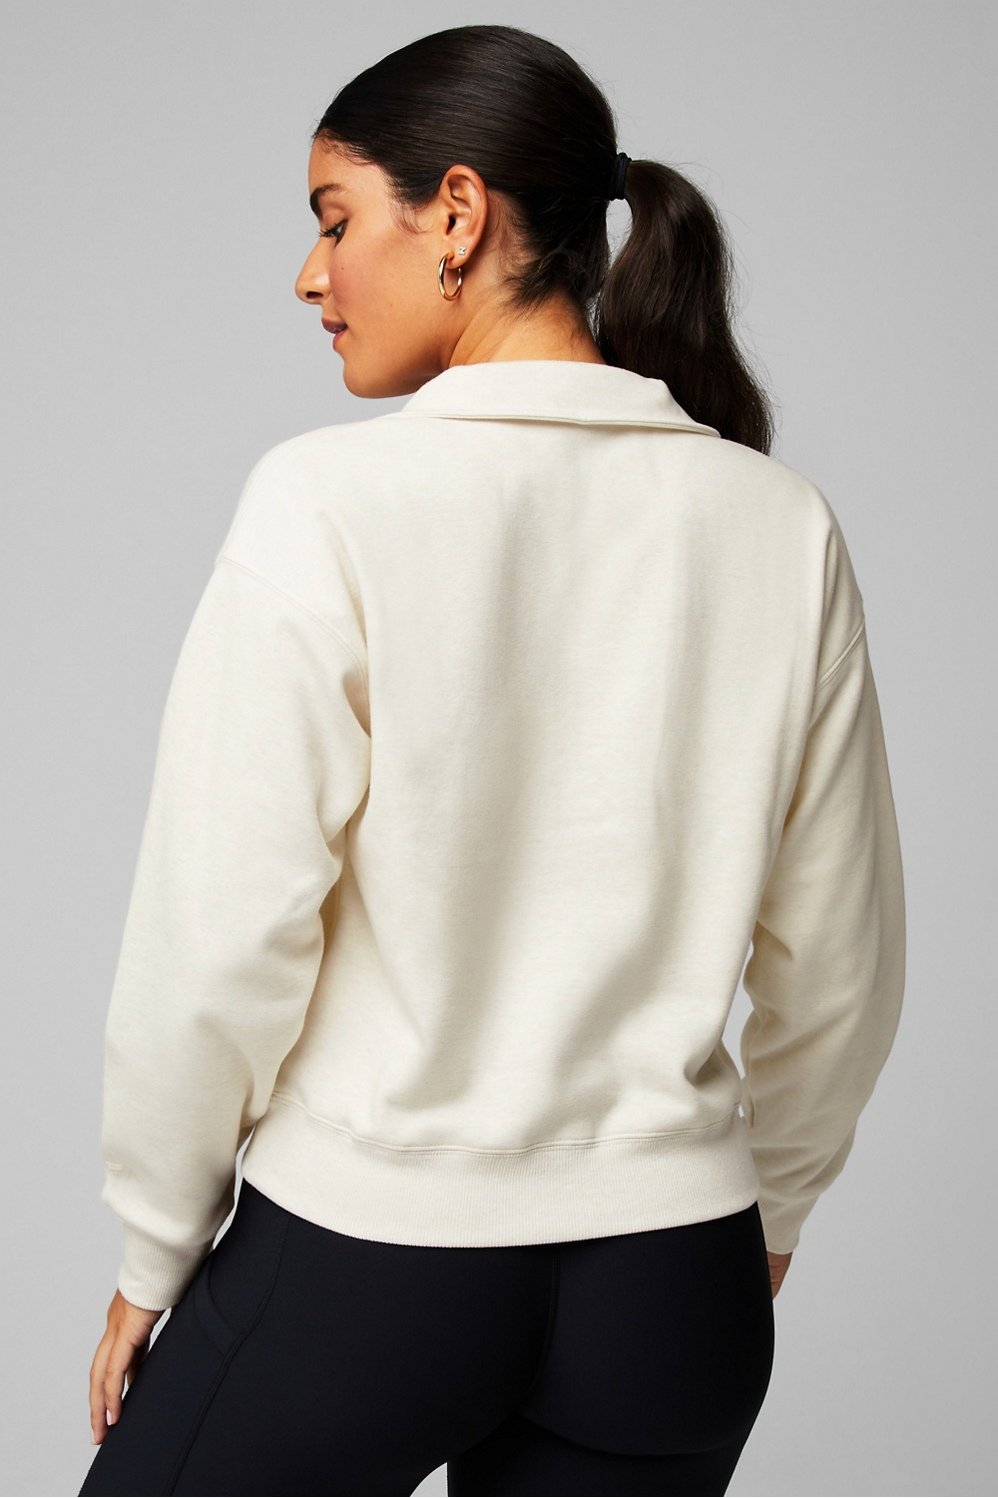 This Half-Zip Sweatshirt Is a Cozy Girl's Dream — Up to 36% Off